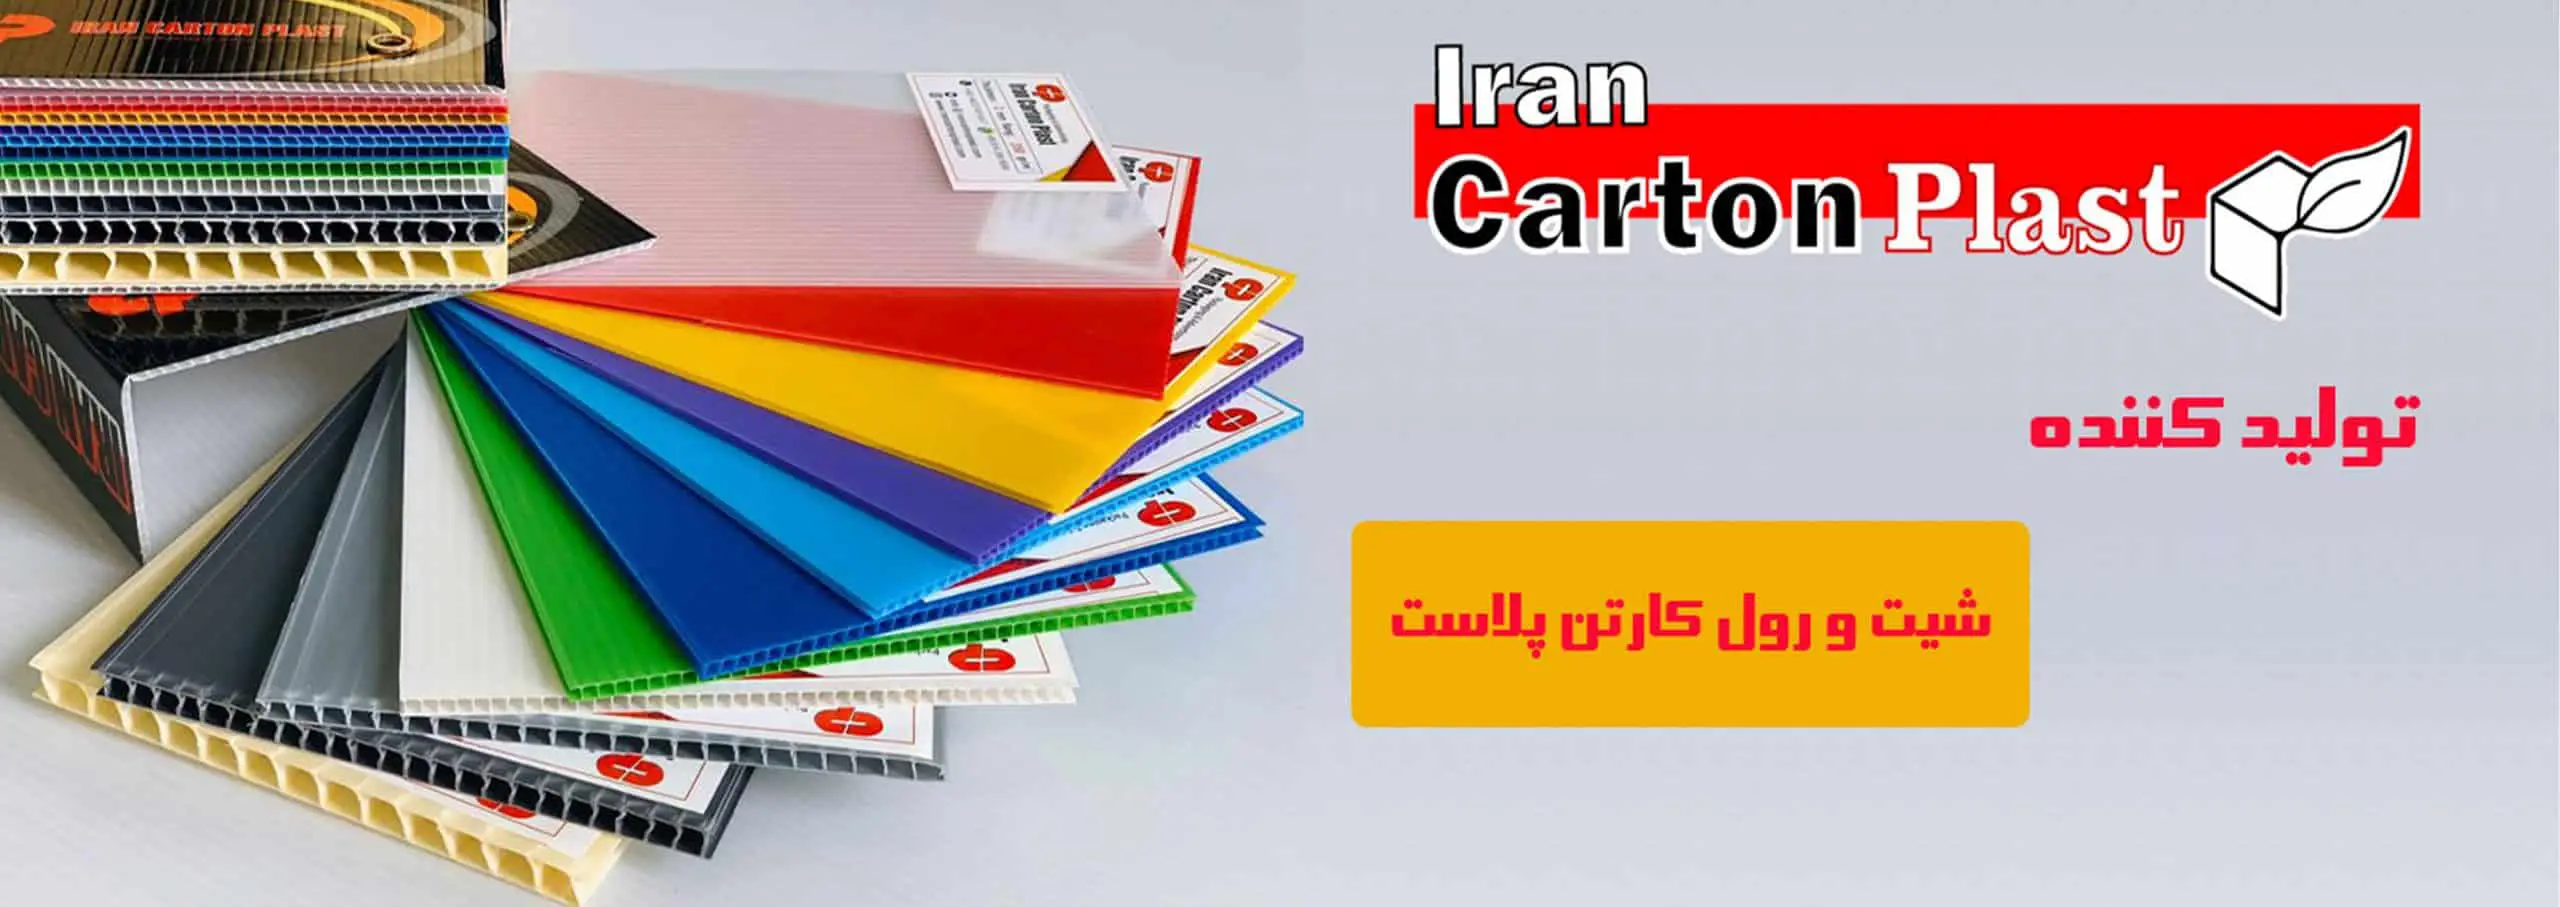 20202 scaled 1 - ایران کارتن پلاست بزرگترین مرجع تولید و فروش کارتن پلاست در ایران